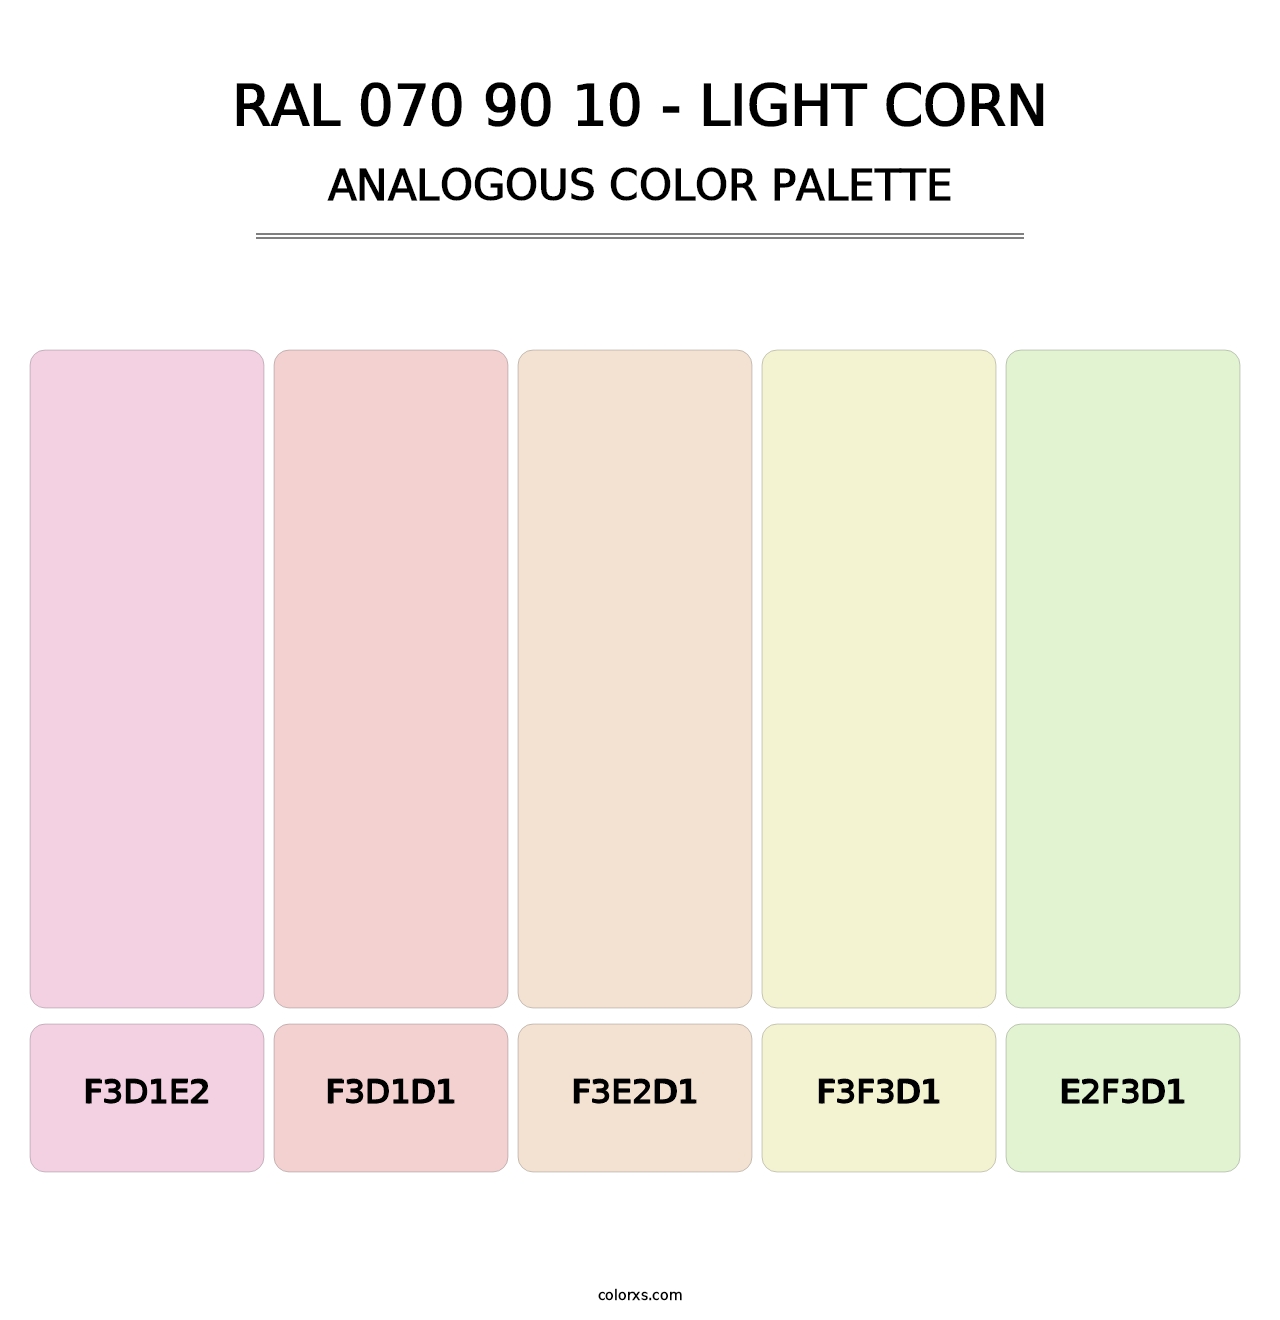 RAL 070 90 10 - Light Corn - Analogous Color Palette